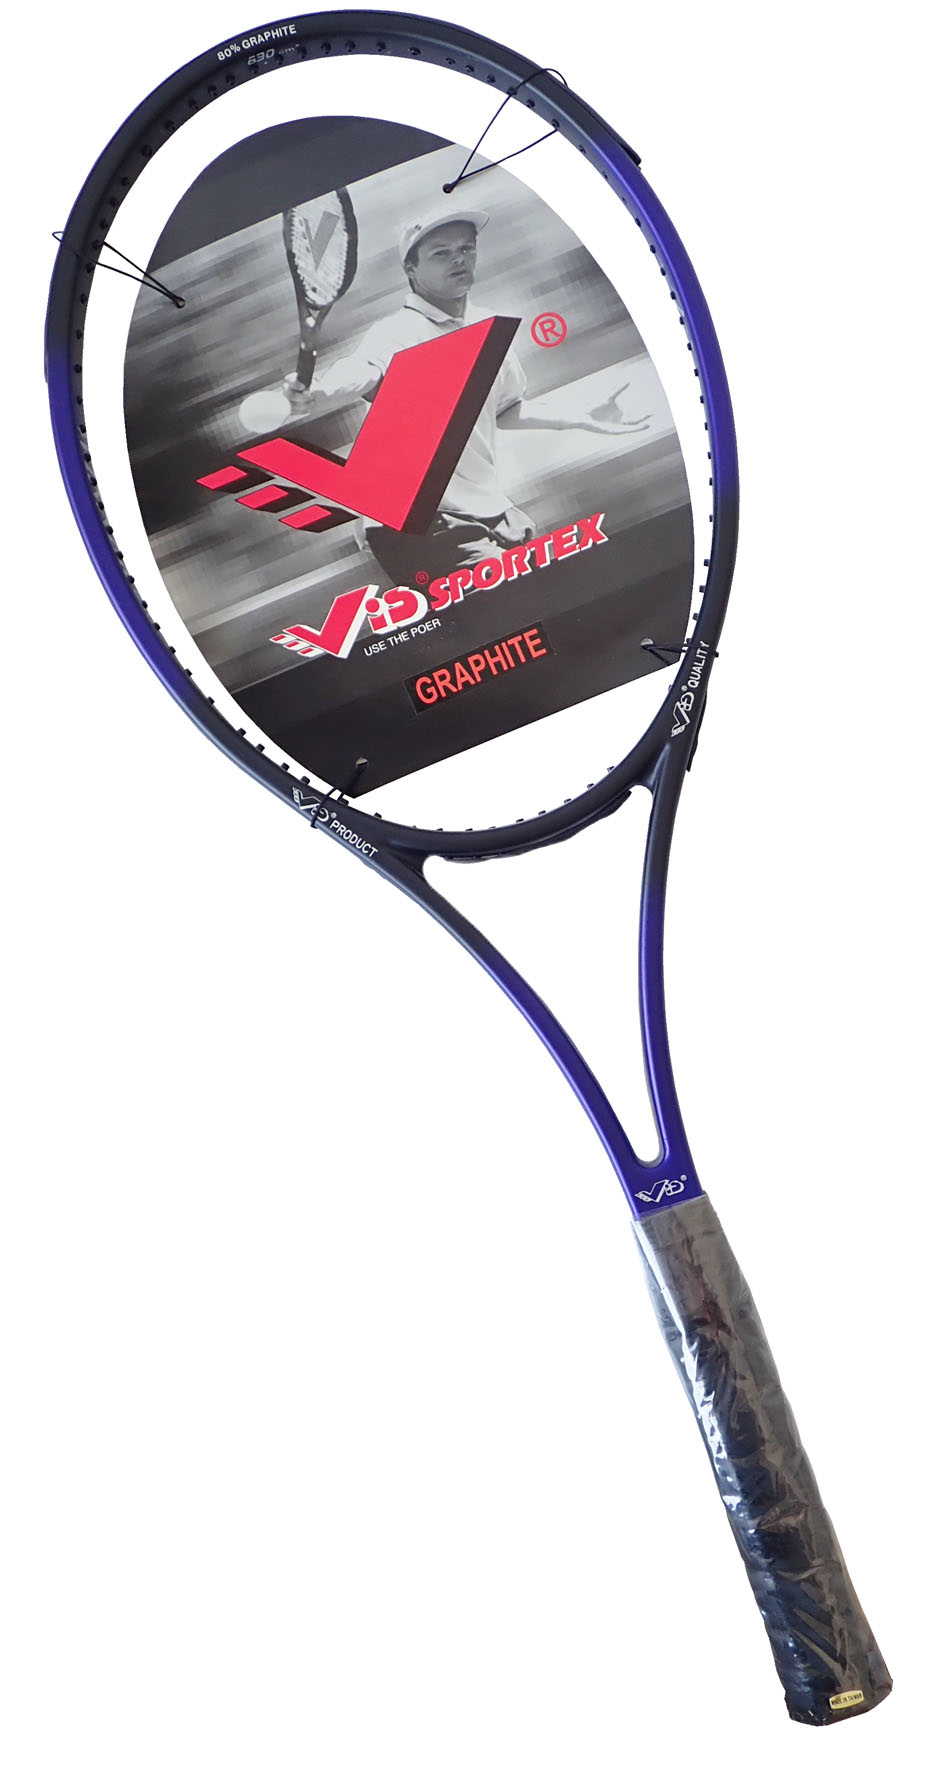 G2418/MO690 Pálka tenisová 100% grafitová PRO CLASSIC 690 modrá